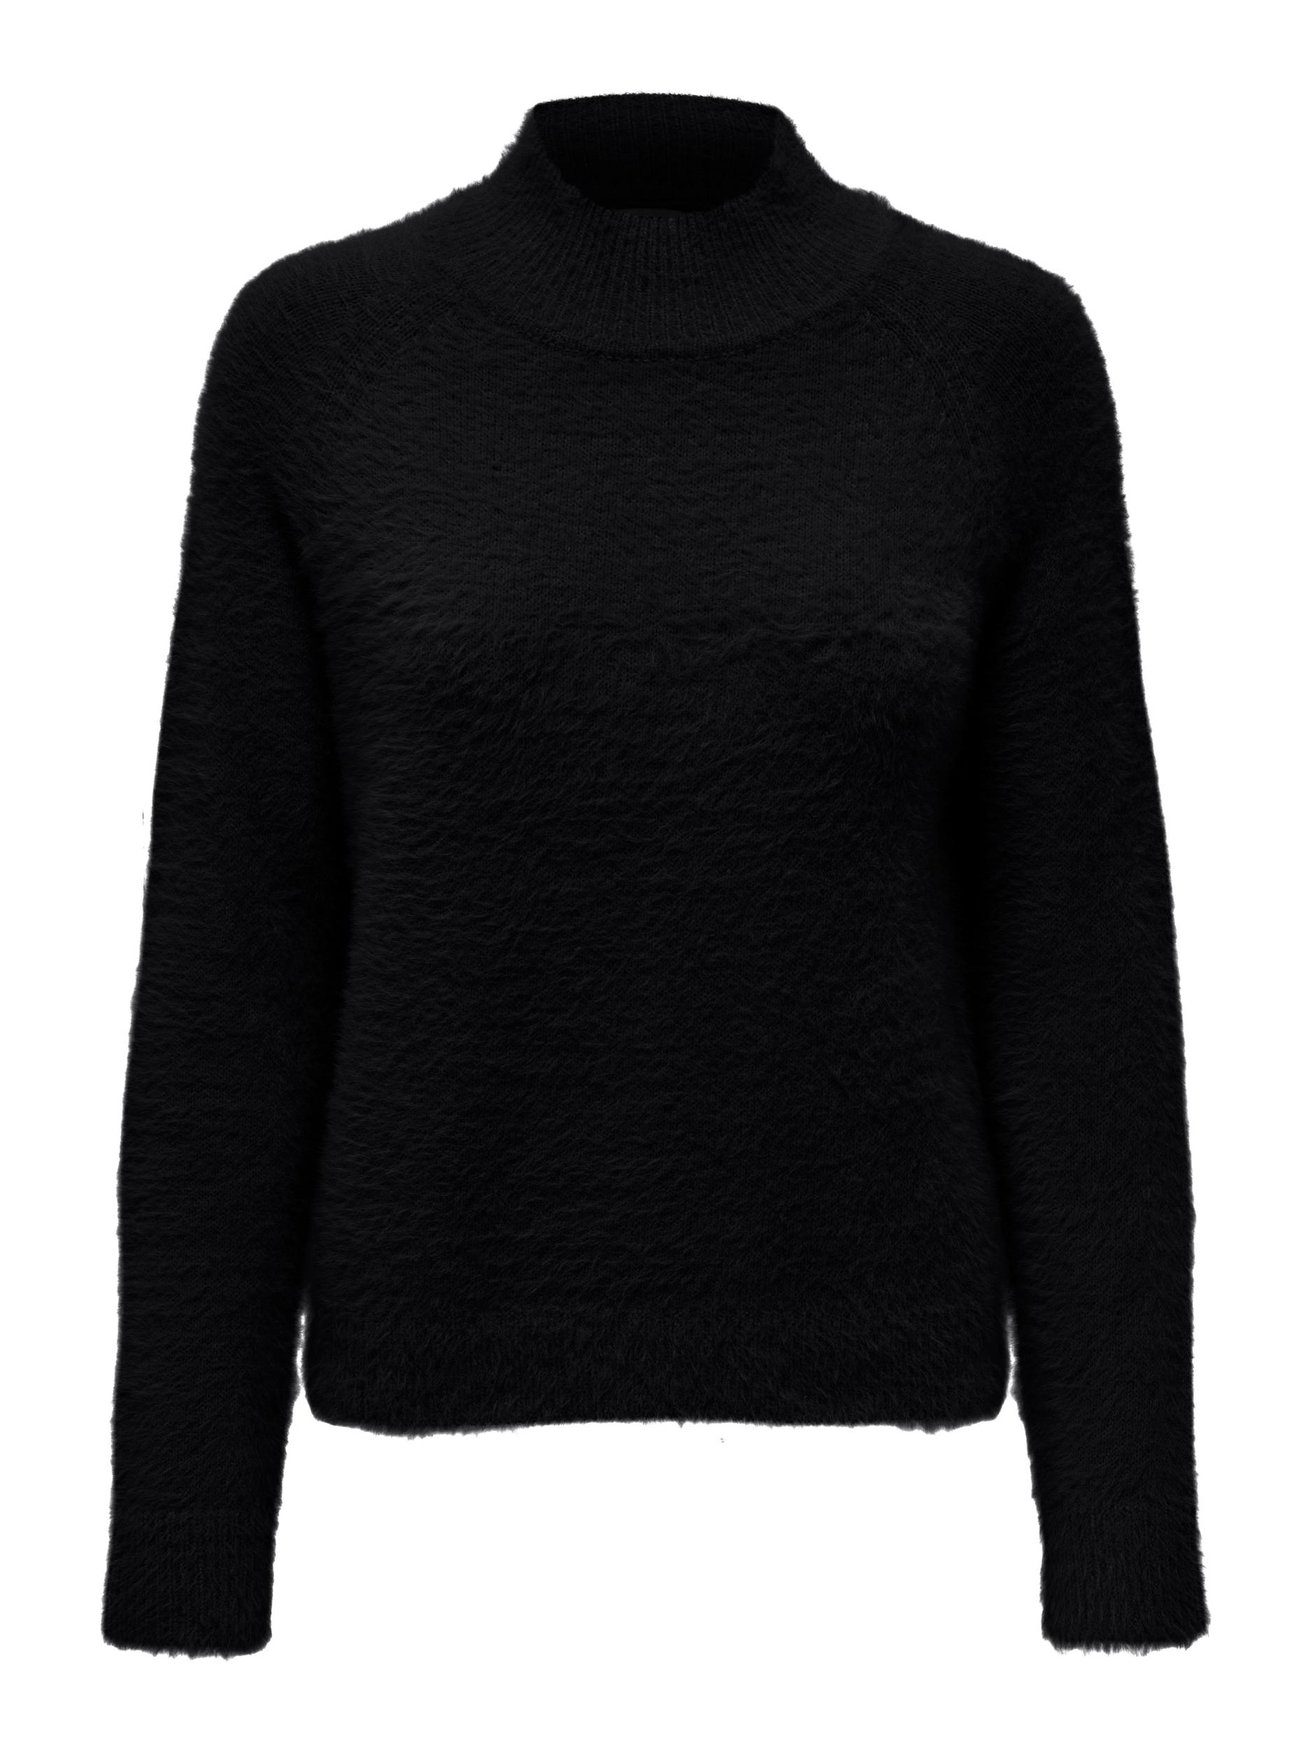 Stehkragen Strickpullover de in JACQUELINE JDYJOLA Sweater YONG Schwarz-2 Gestrickt Flauschiger Pullover 6193